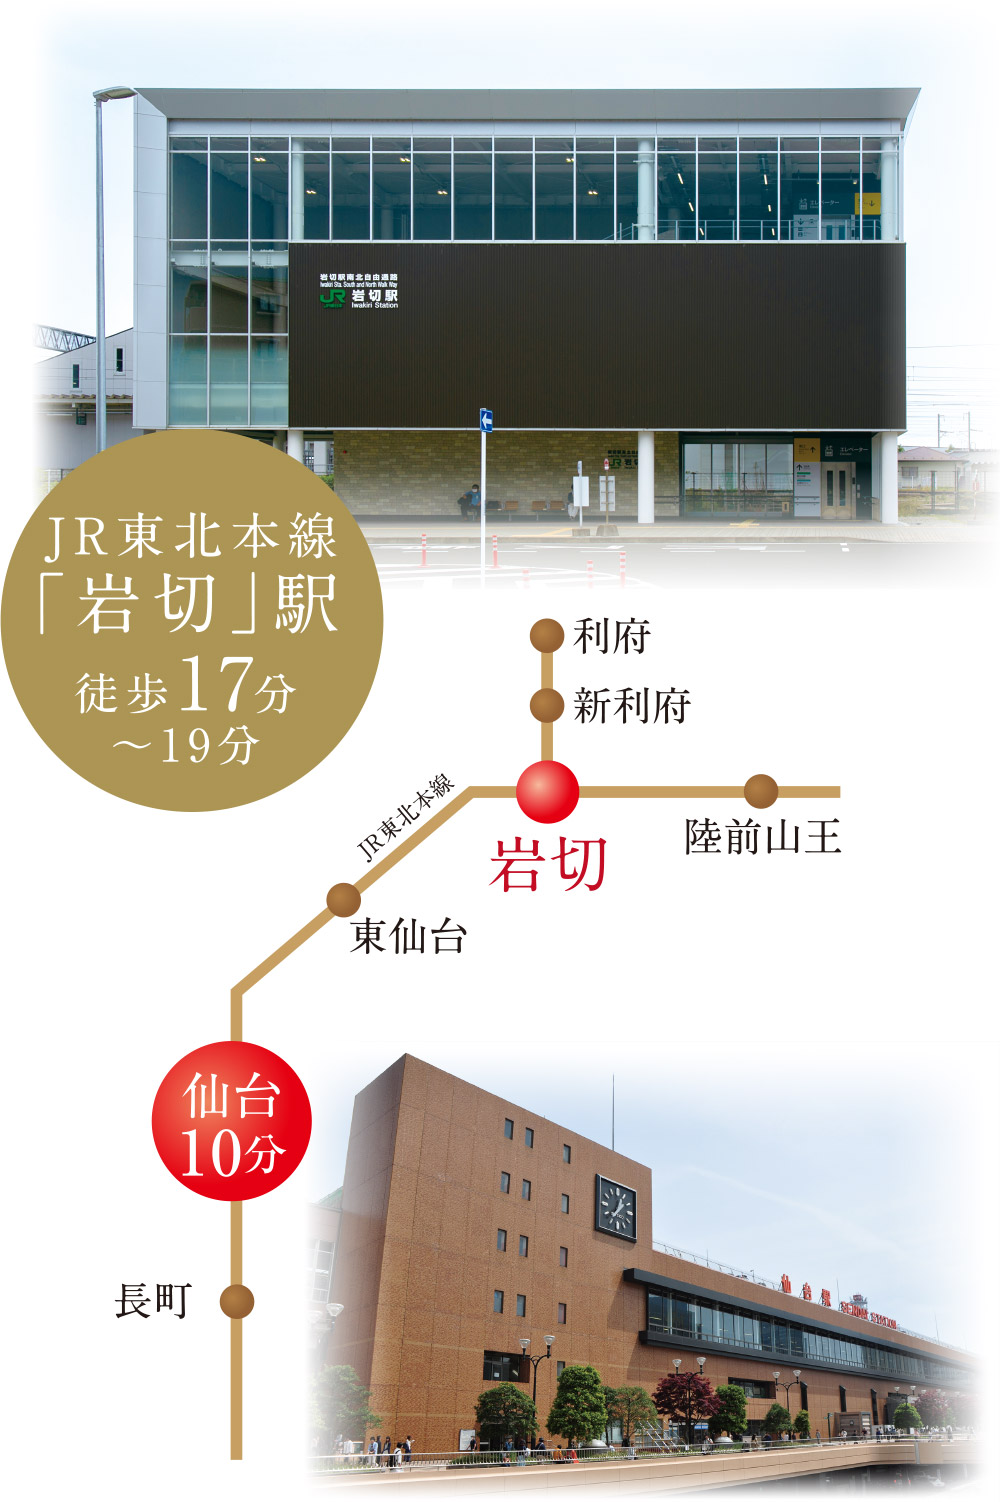 最寄りの岩切駅乗車で、２駅約10分で東北の中心・仙台駅へ。